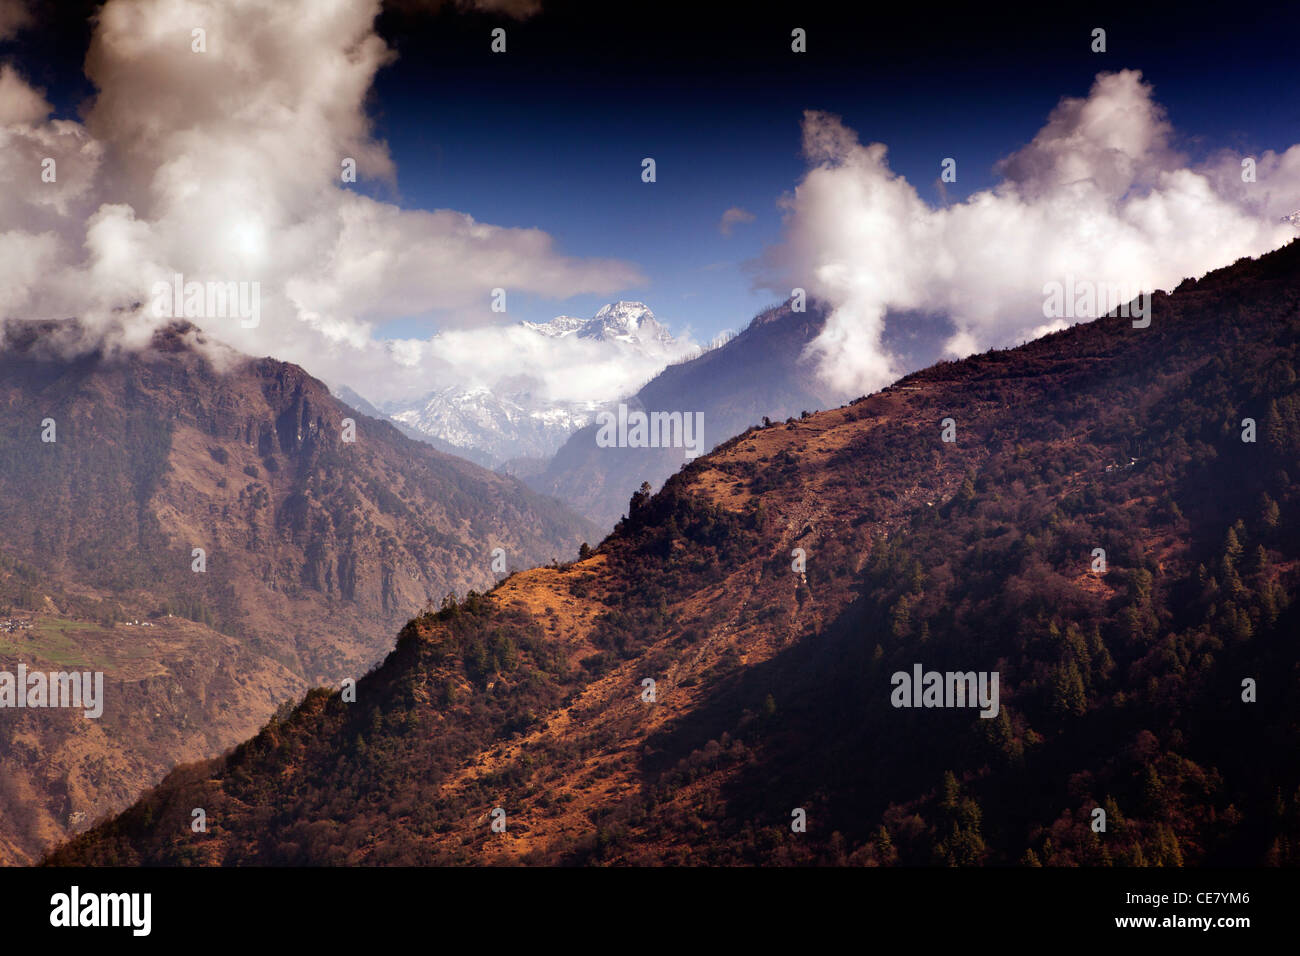 India, Arunachal Pradesh, Tawang Valley view of snow capped Himalayan peaks from Jang Stock Photo